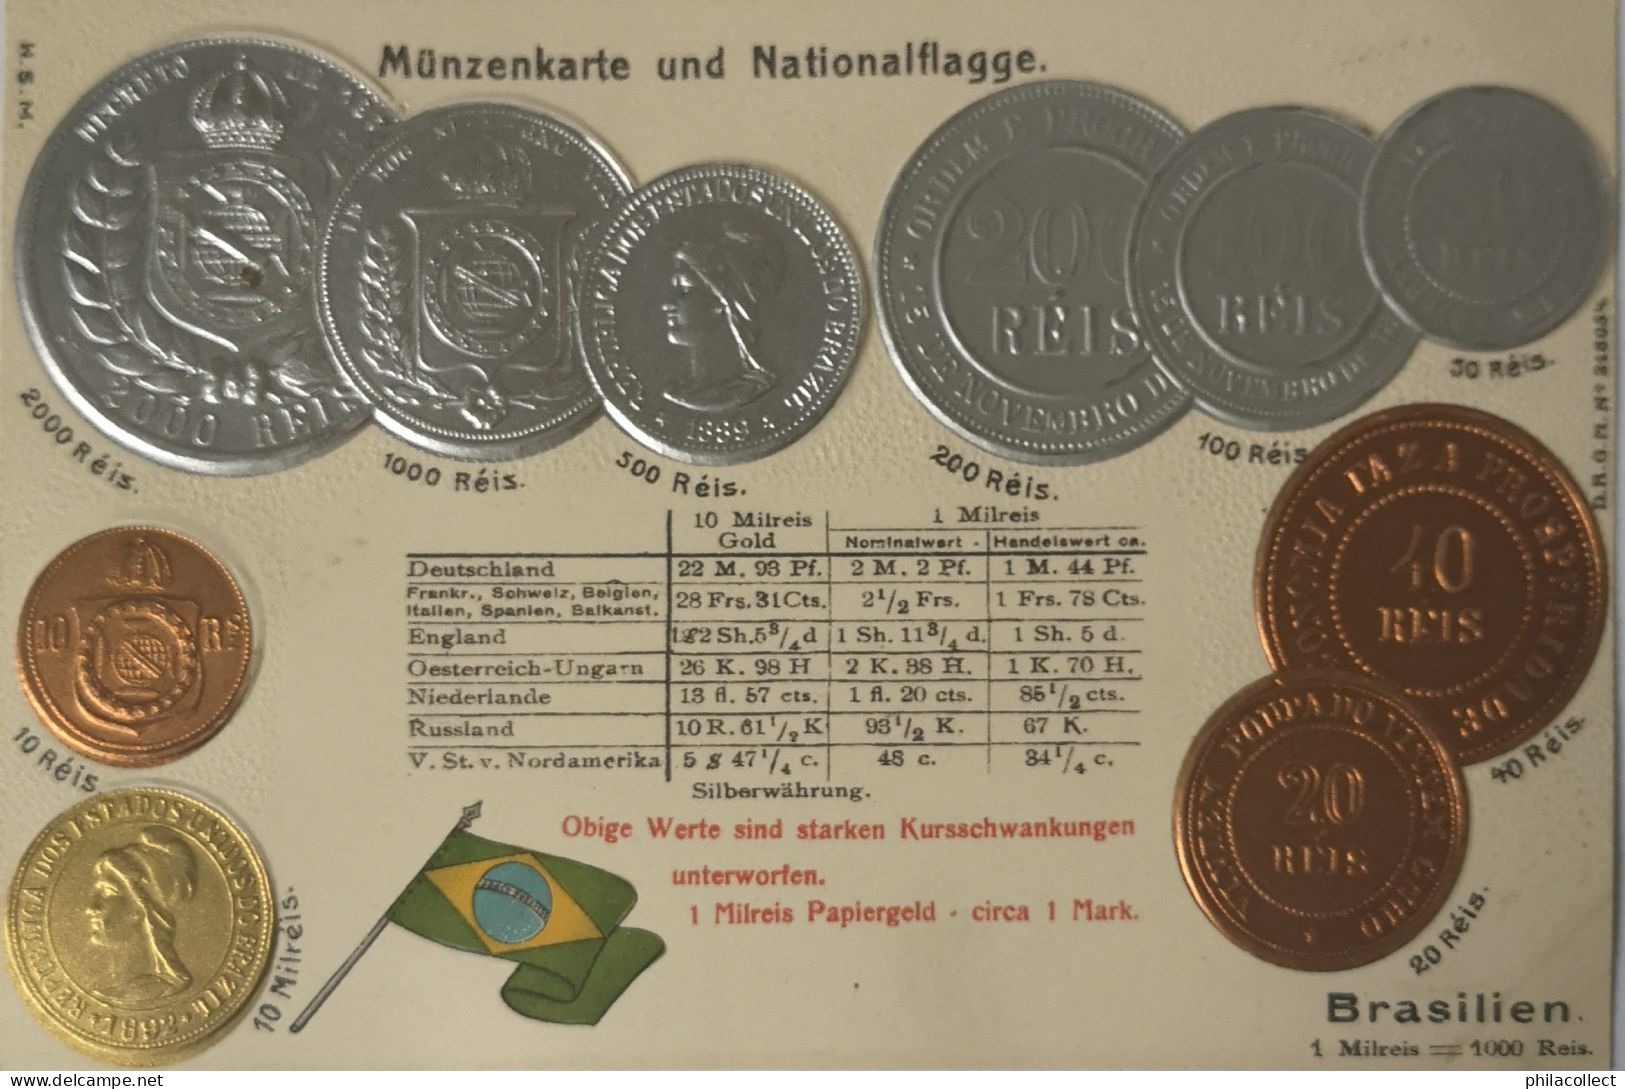 Brasilien - Brasil // Münzkarte Prägedruck - Coin Card Embossed  19?? - Münzen (Abb.)